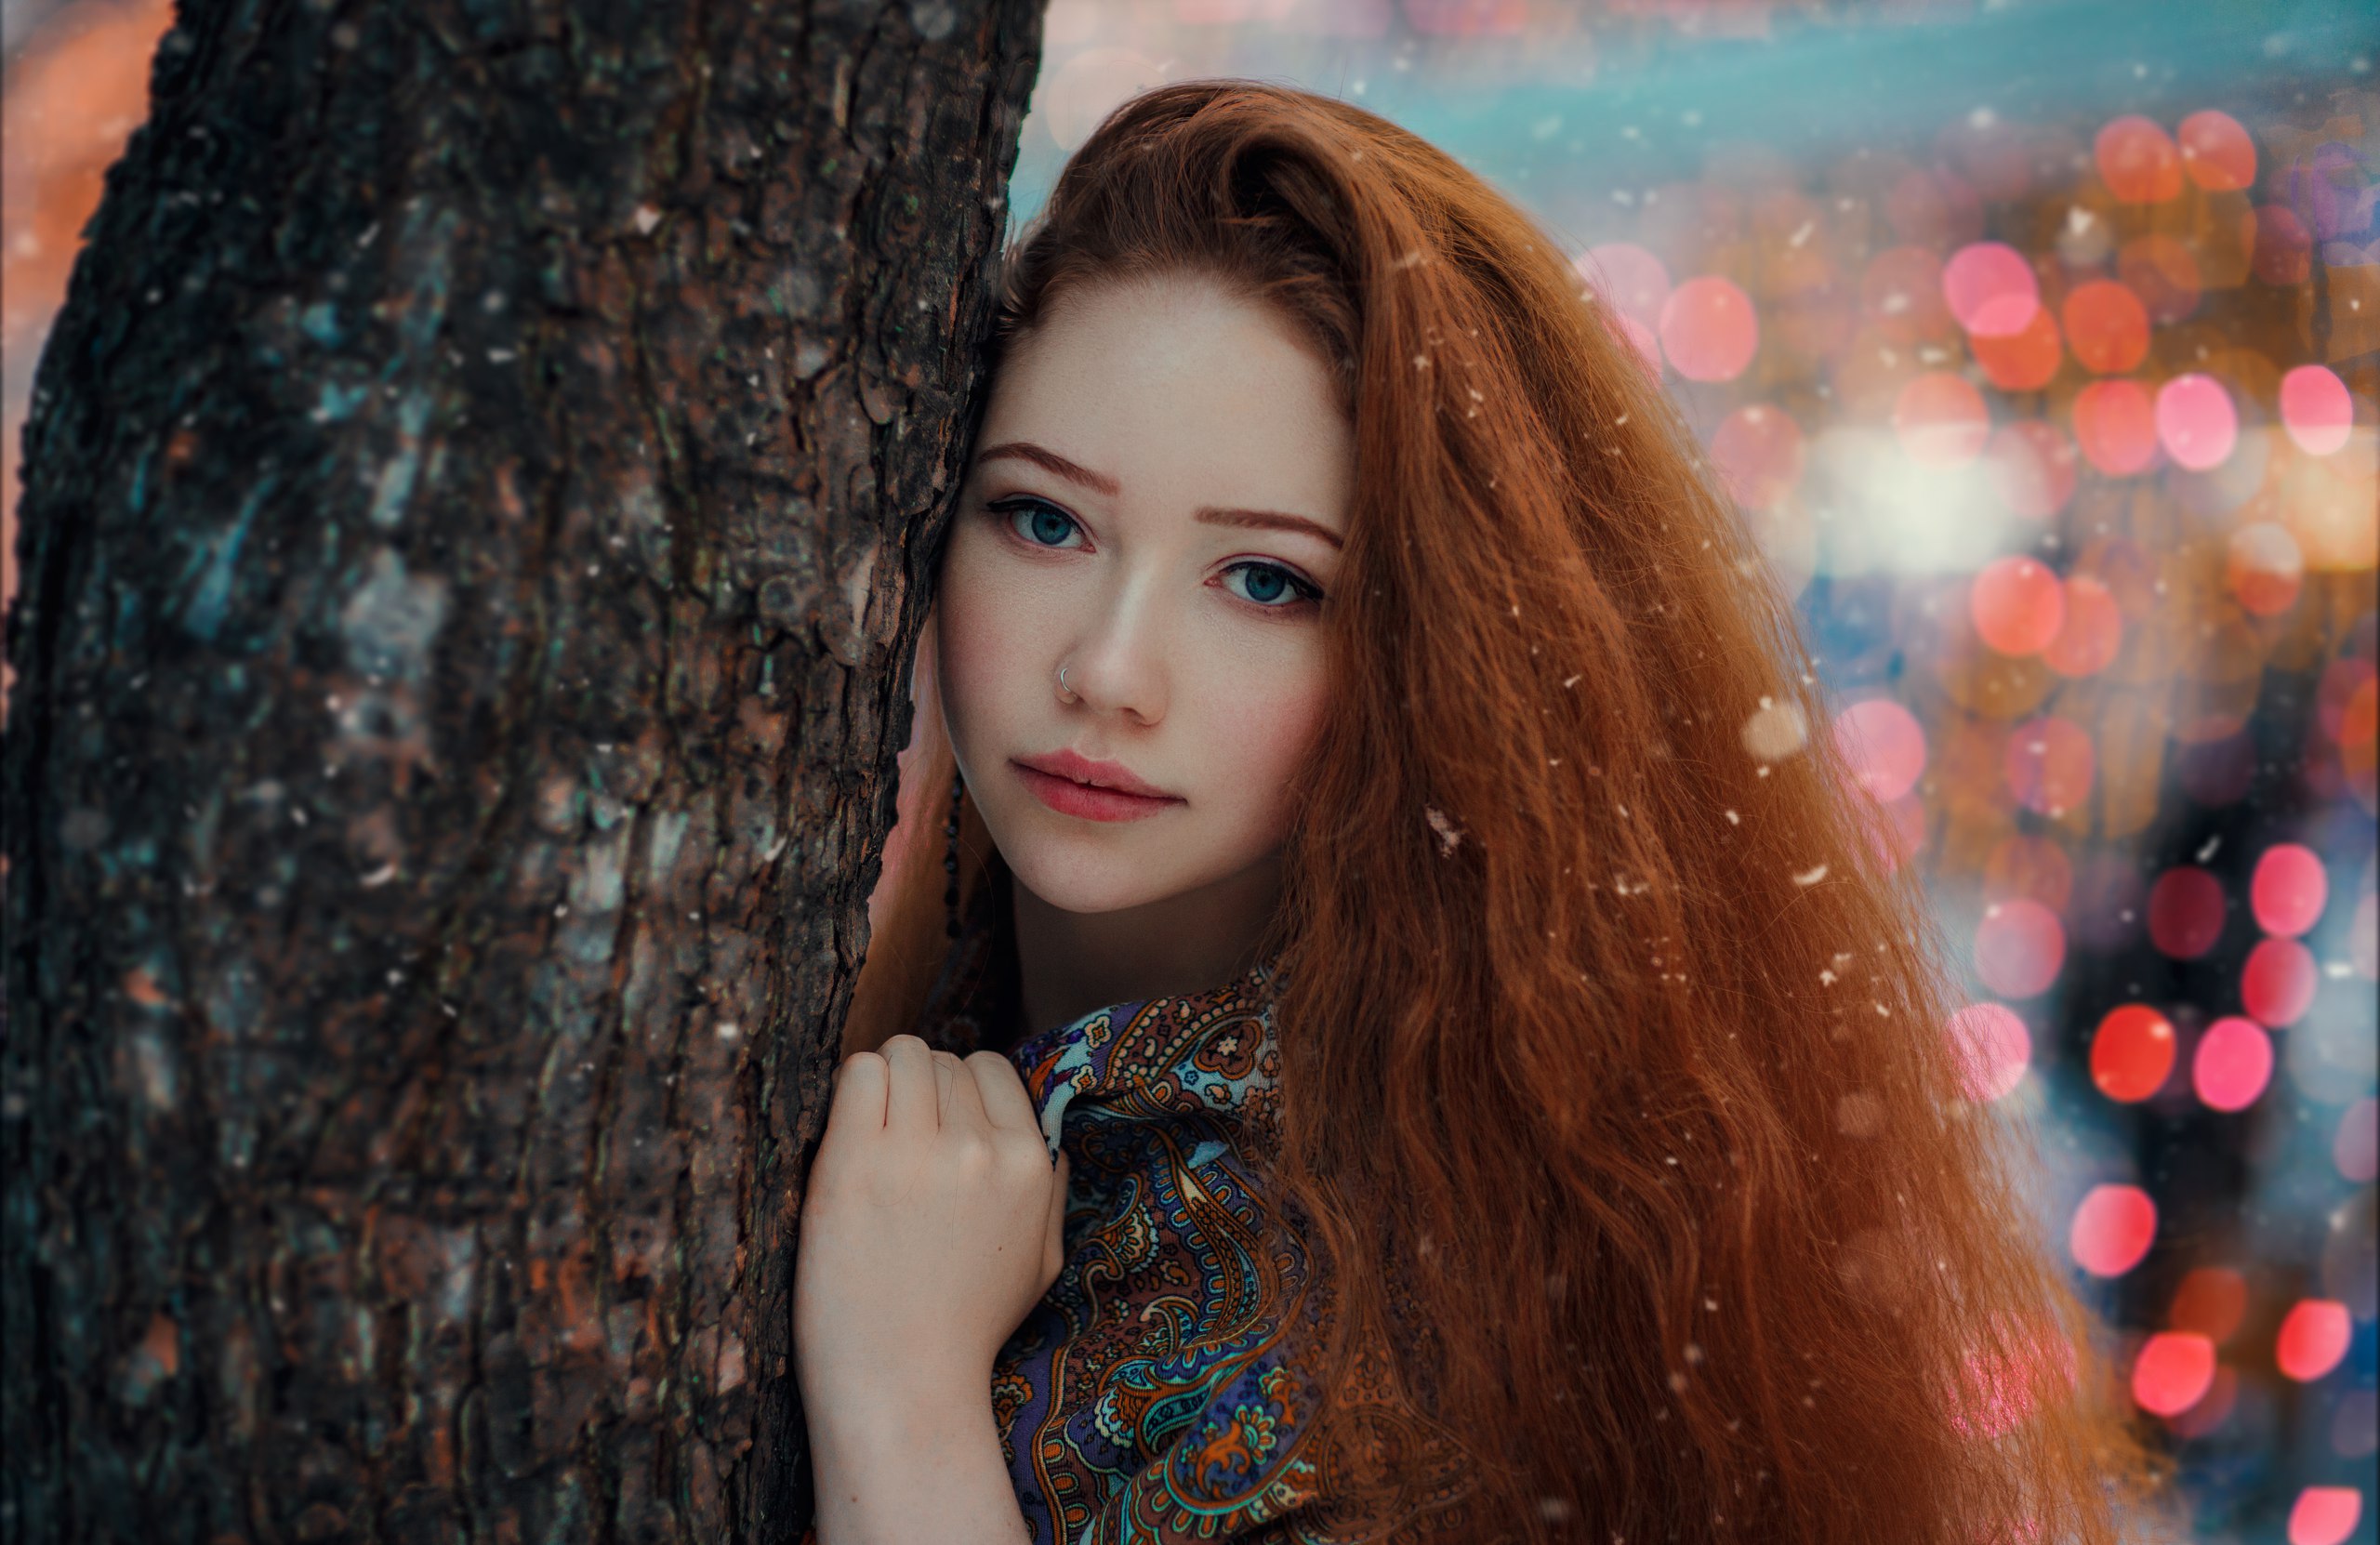 Hakan Erenler Women Model Portrait Outdoors Looking At Viewer Depth Of Field Redhead Long Hair Nose  2560x1662